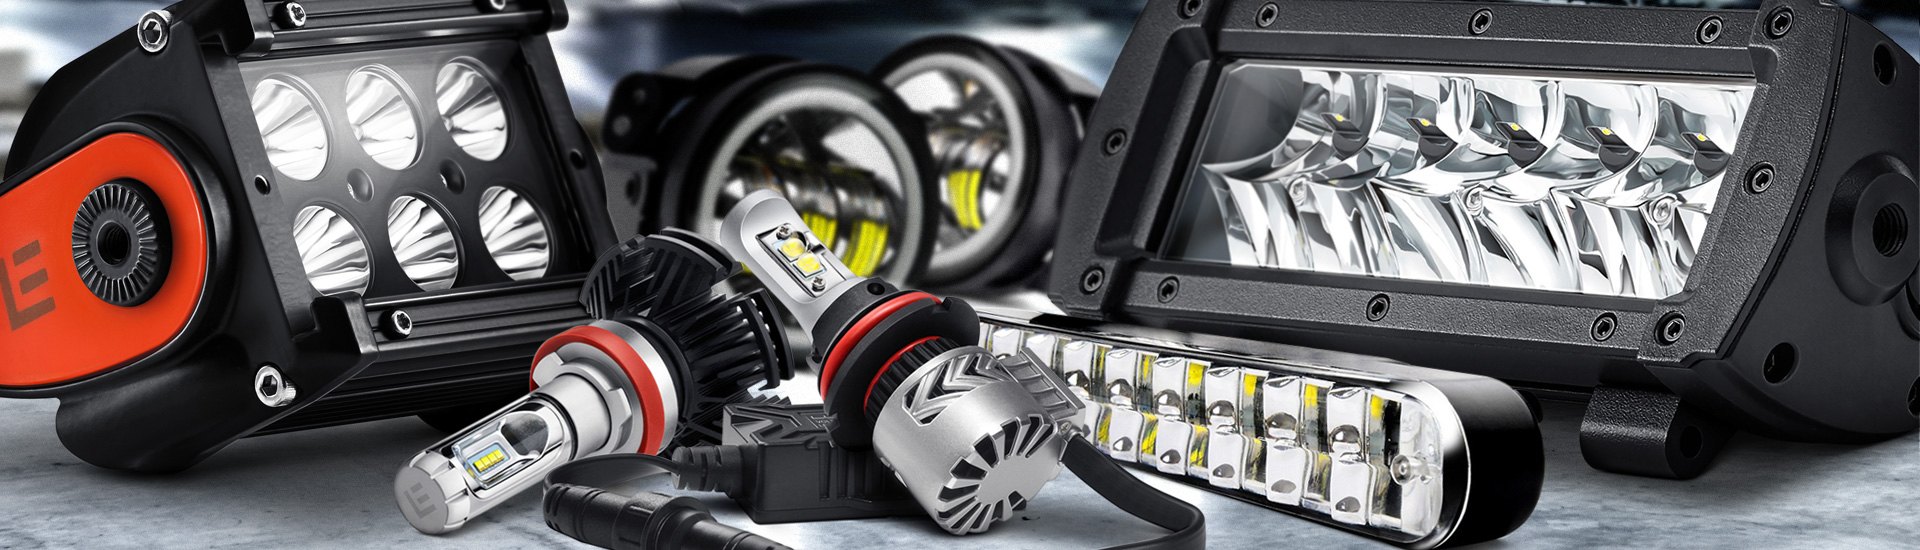 Automotive LED Lighting Explained